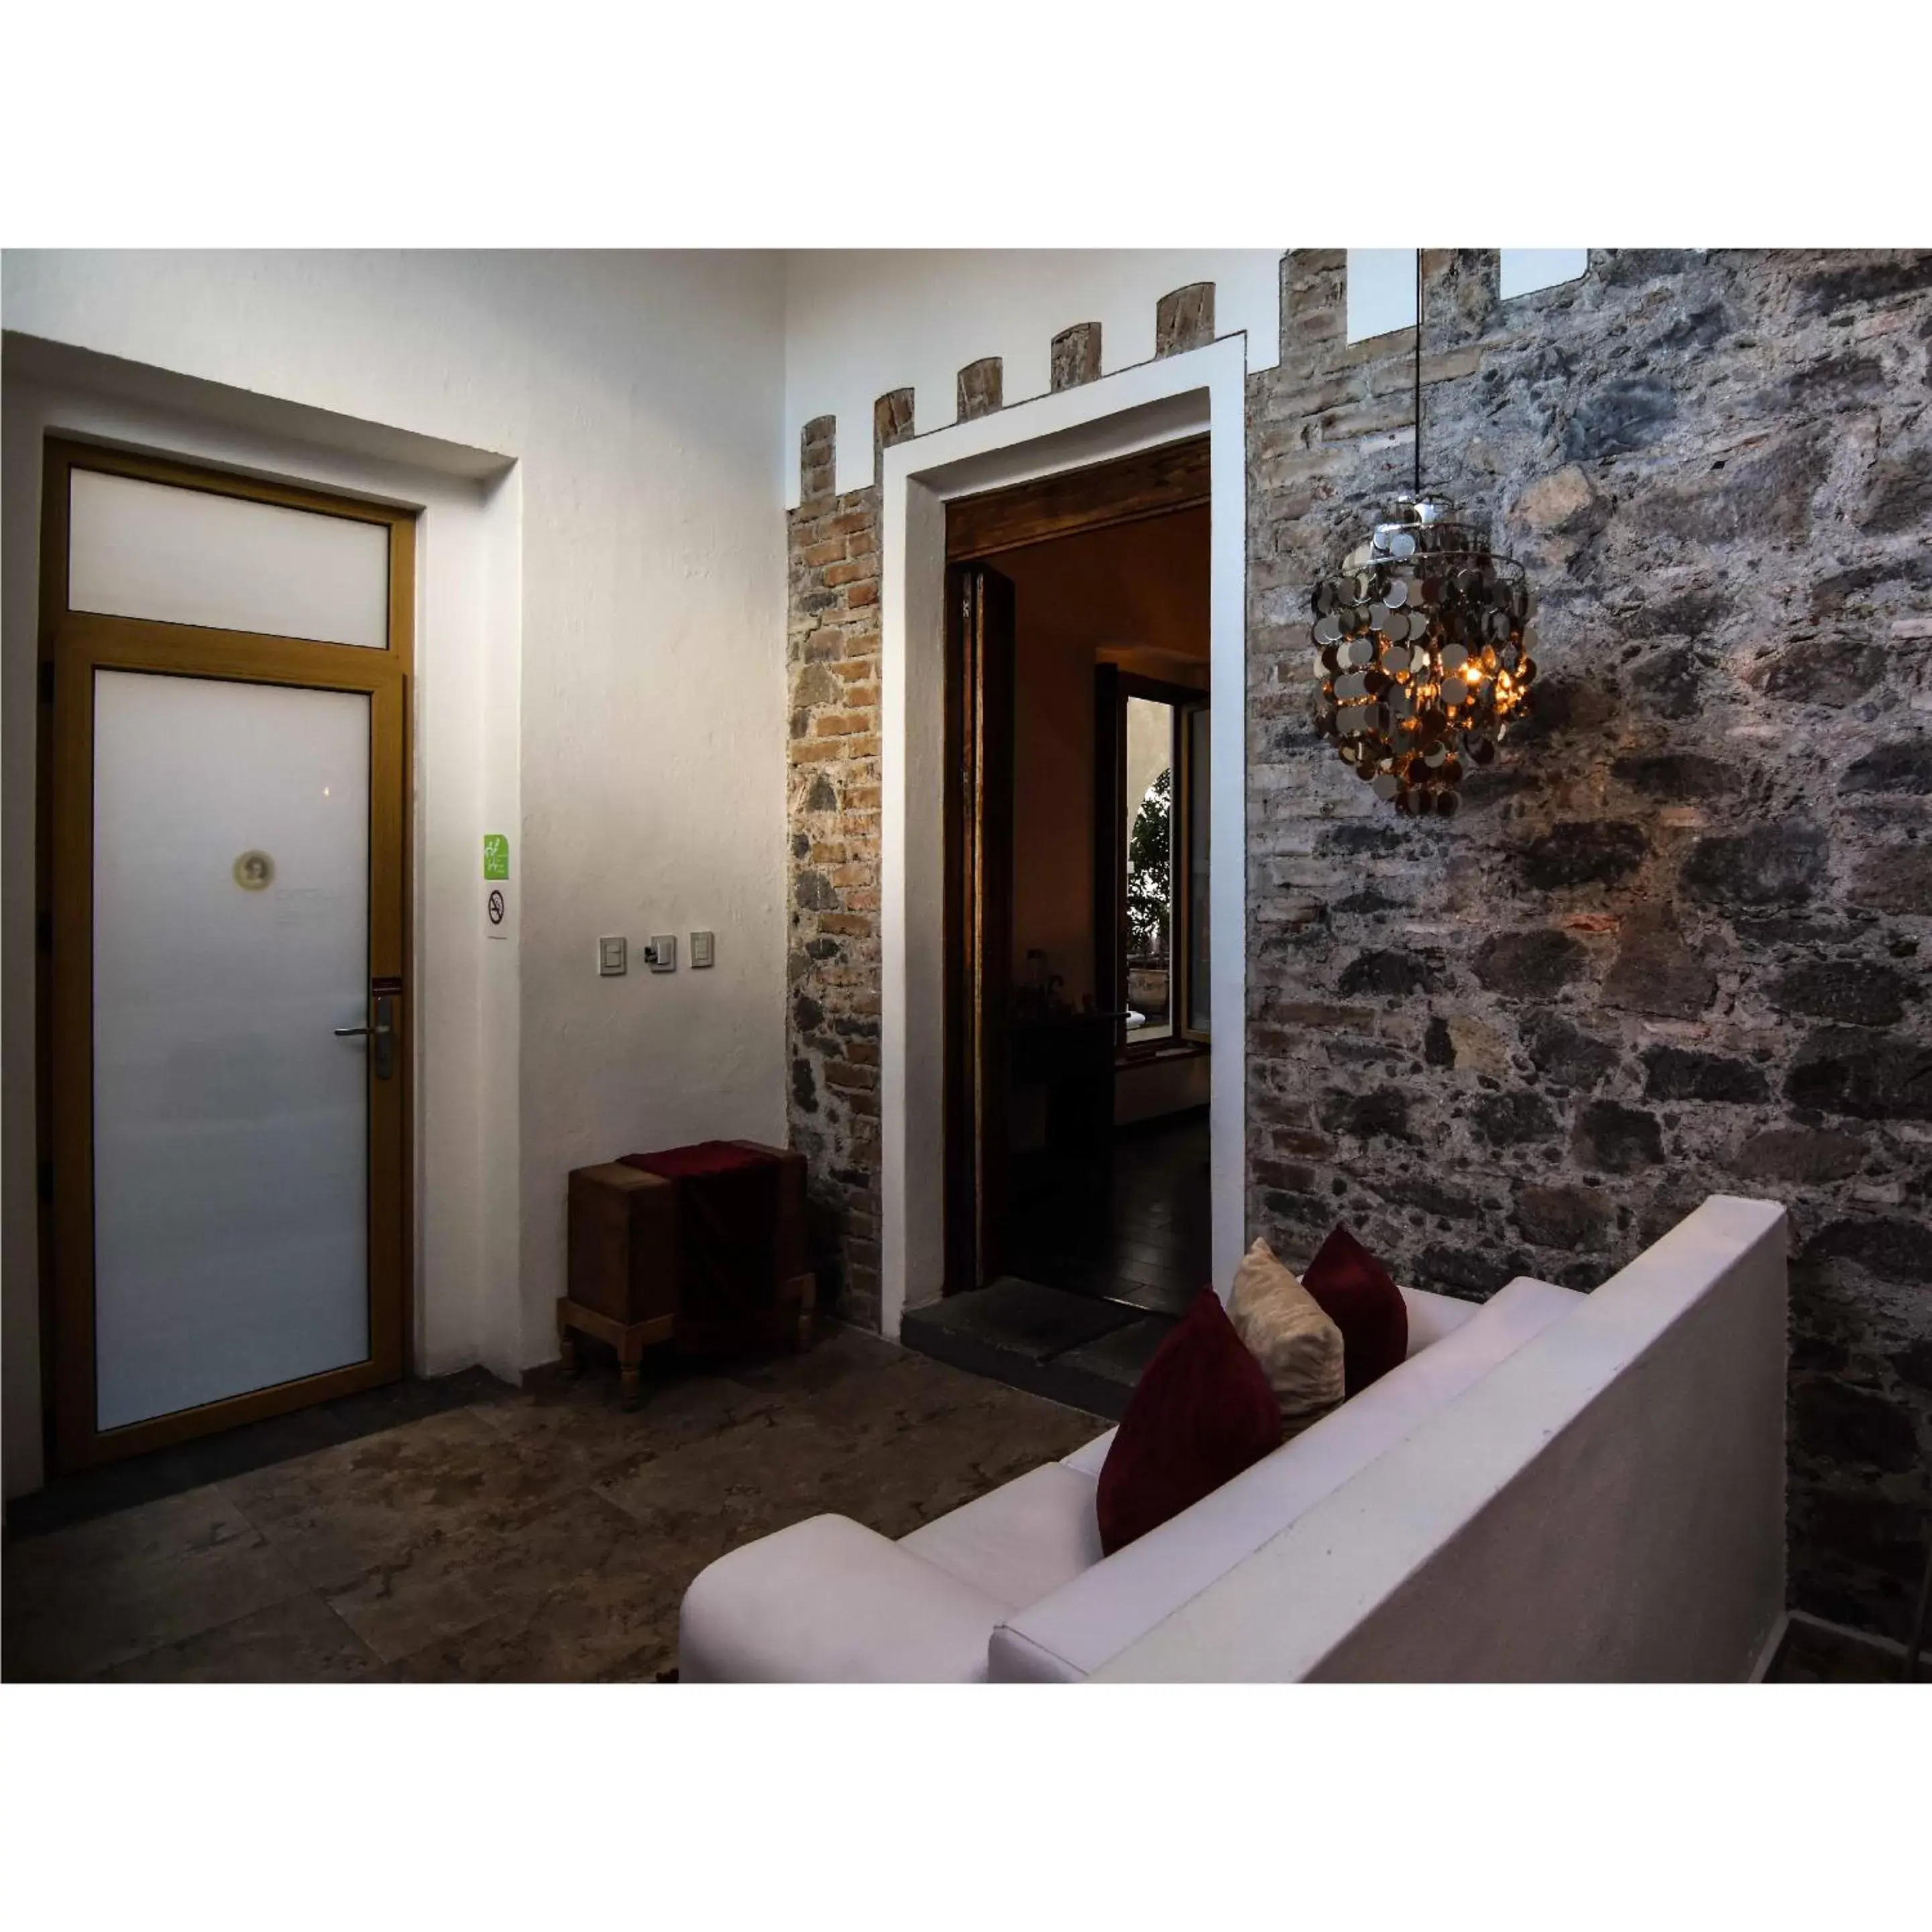 Decorative detail, Facade/Entrance in El Sueño Hotel & Spa